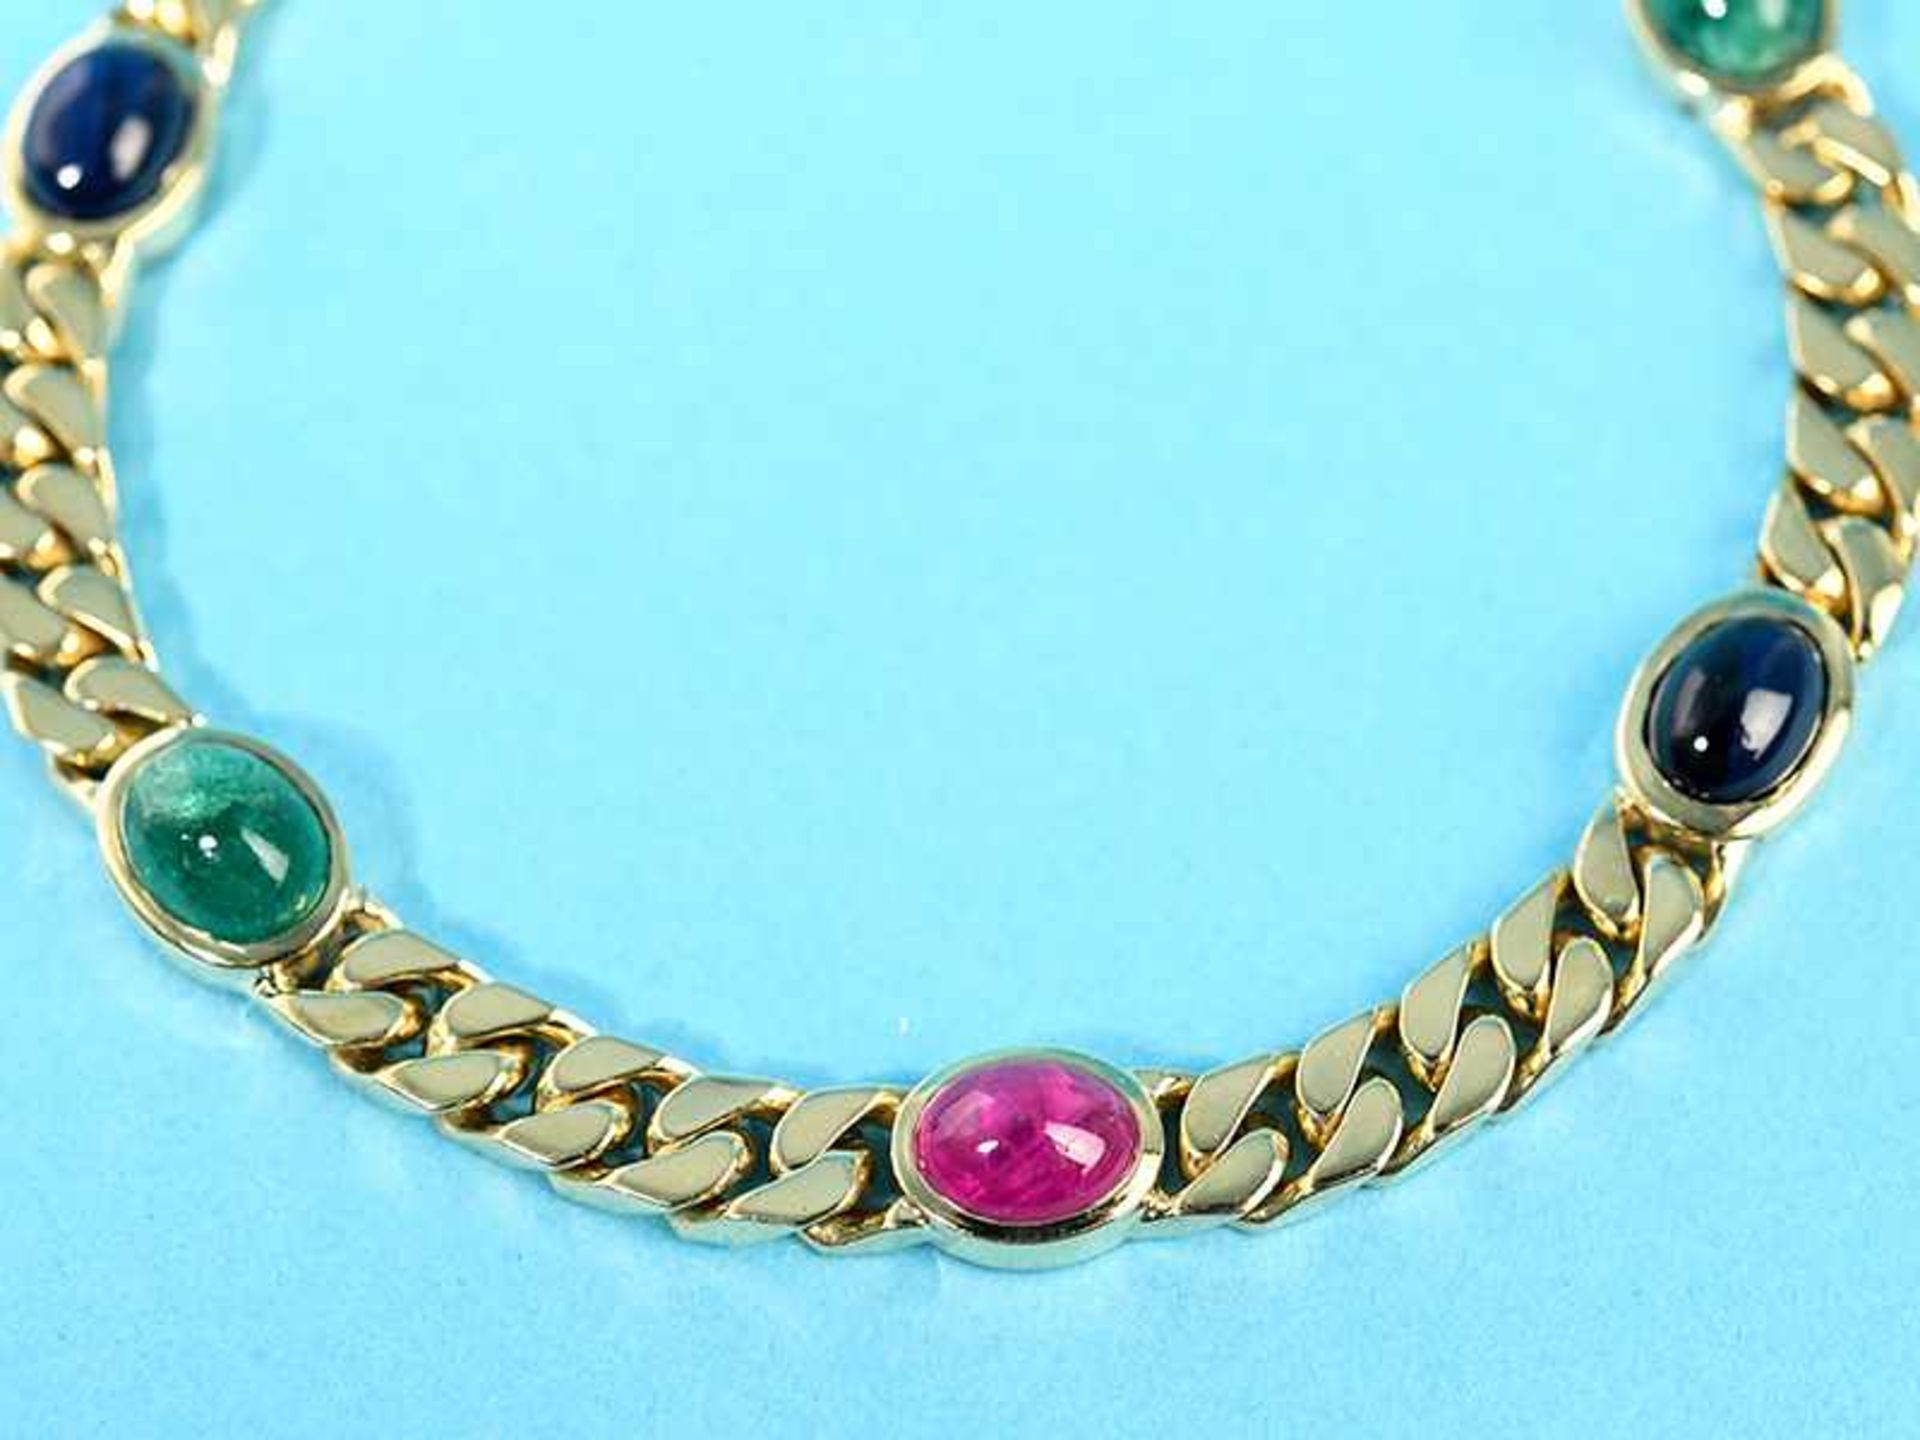 Armband mit Rubin-, Saphir- und Smaragd-Cabochon, Goldschmiedearbeit, 80- er Jahre 750/- Gelbgold. - Image 2 of 2